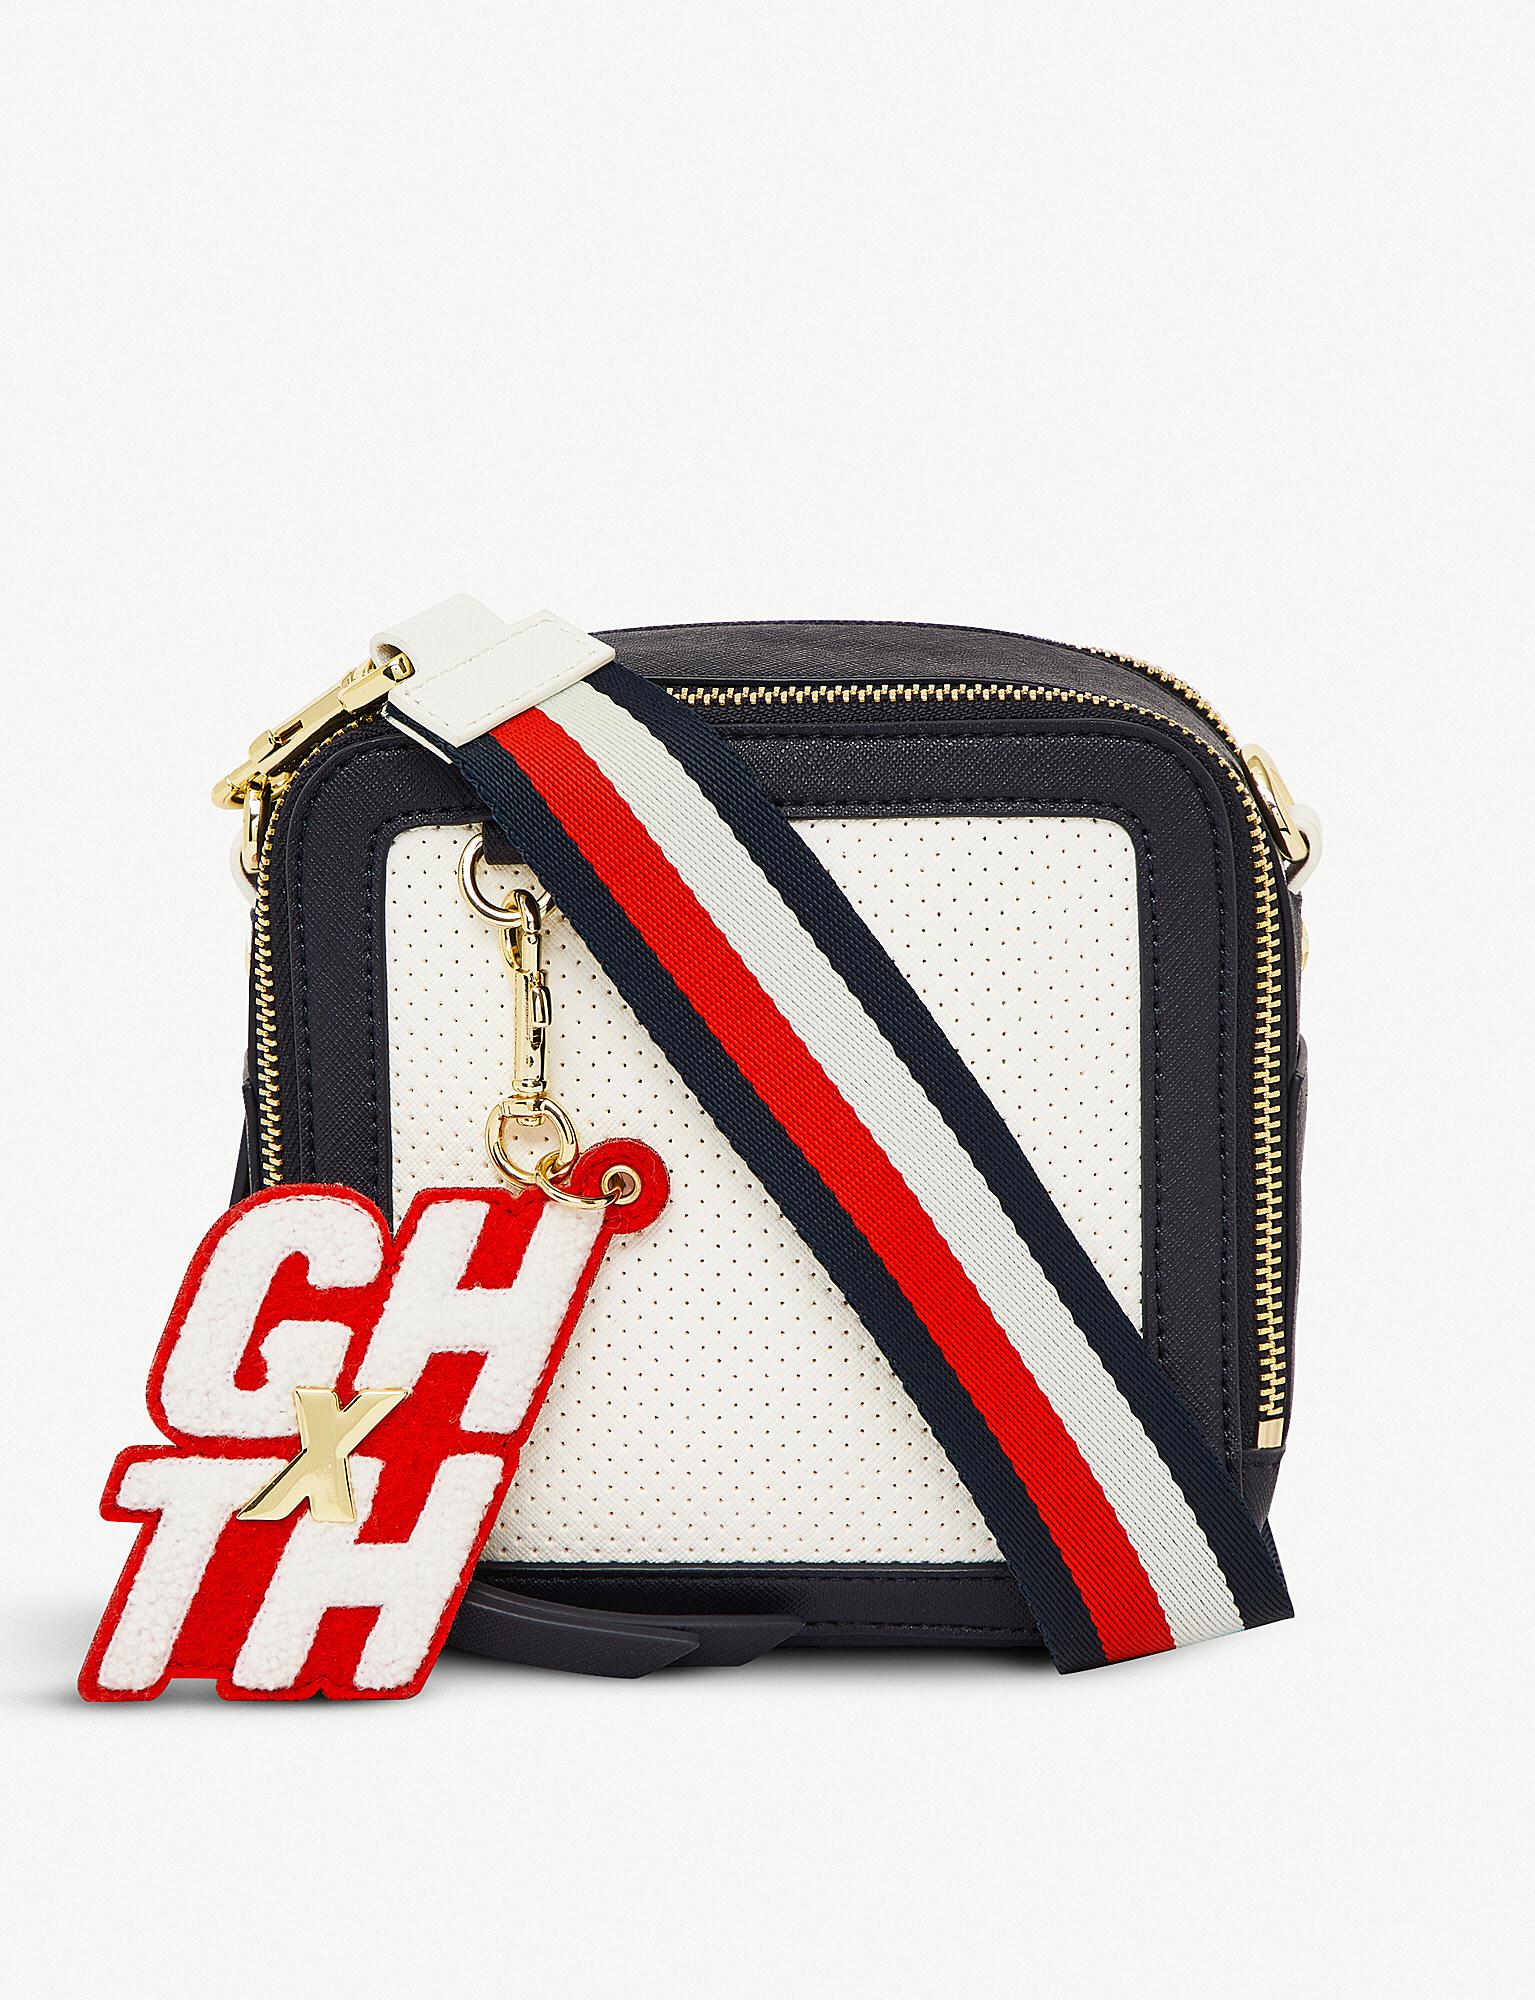 Tommy Hilfiger X Gigi Hadid Cross-body Bag